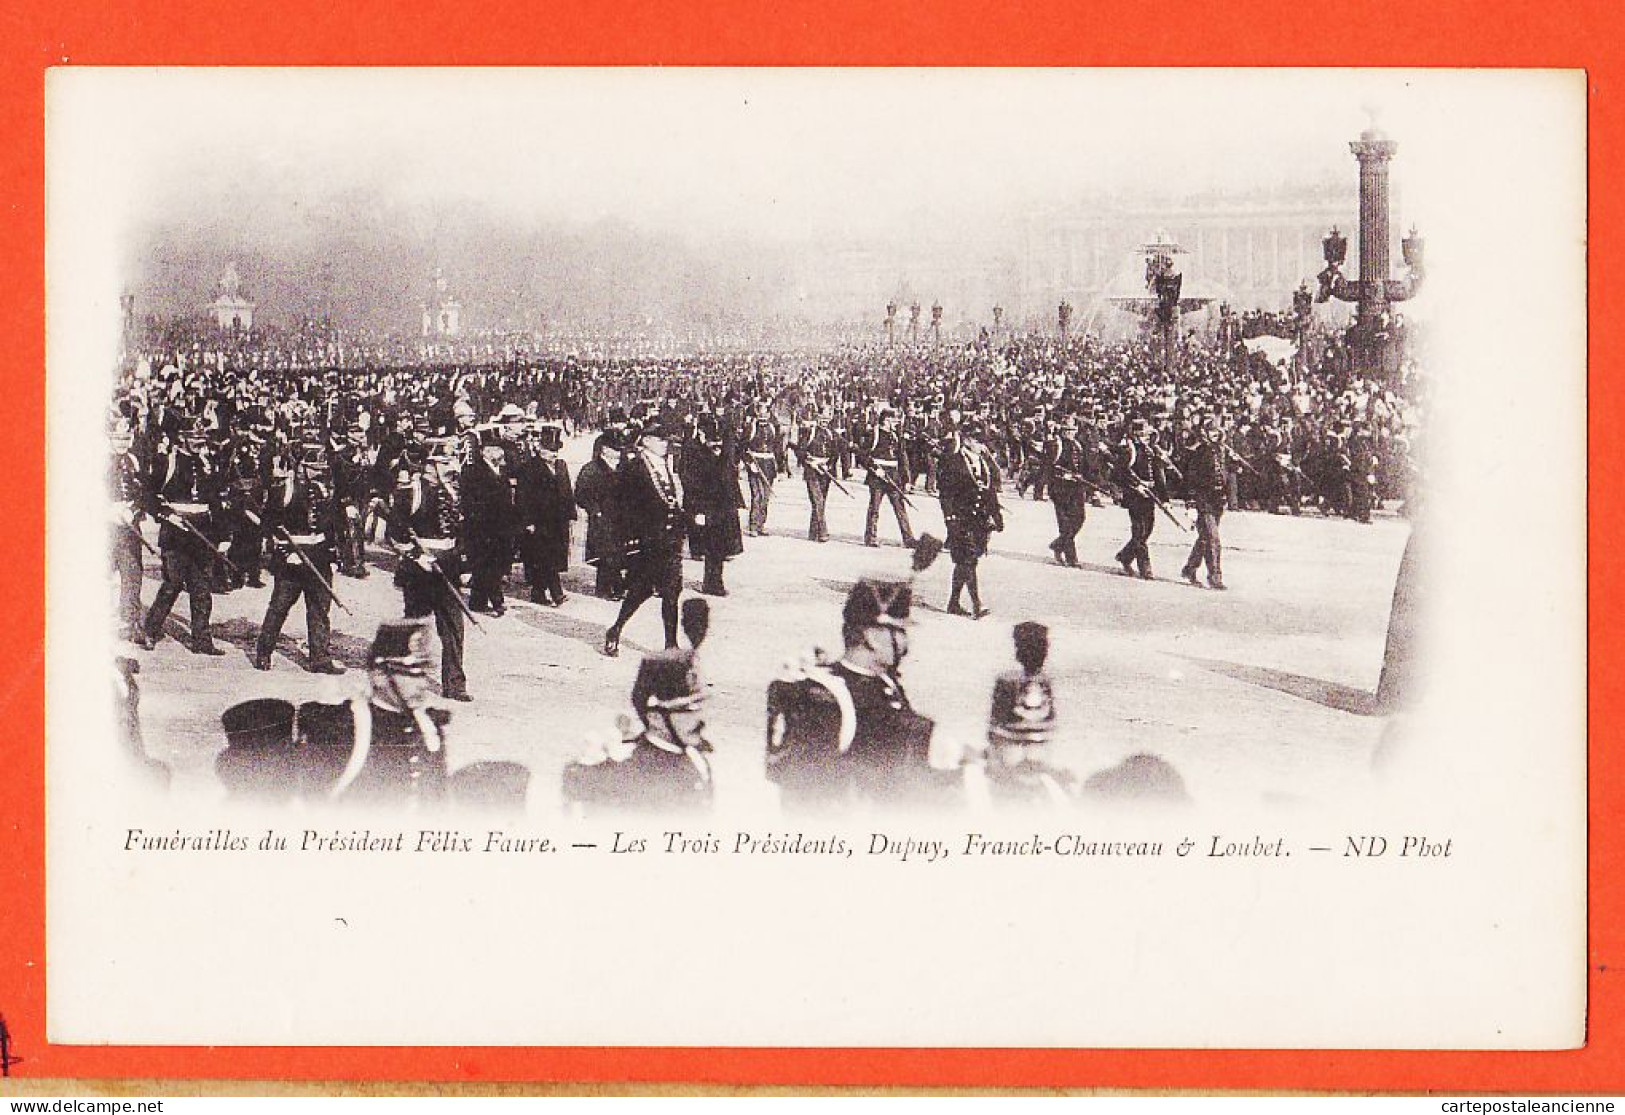 29106 / ⭐ Peu Commun PARIS 23 FEVRIER 1899 Funerailles Président FELIX FAURE 3 Présidents DUPUY FRANCK-CHAUVEAU LOUBET  - Funeral